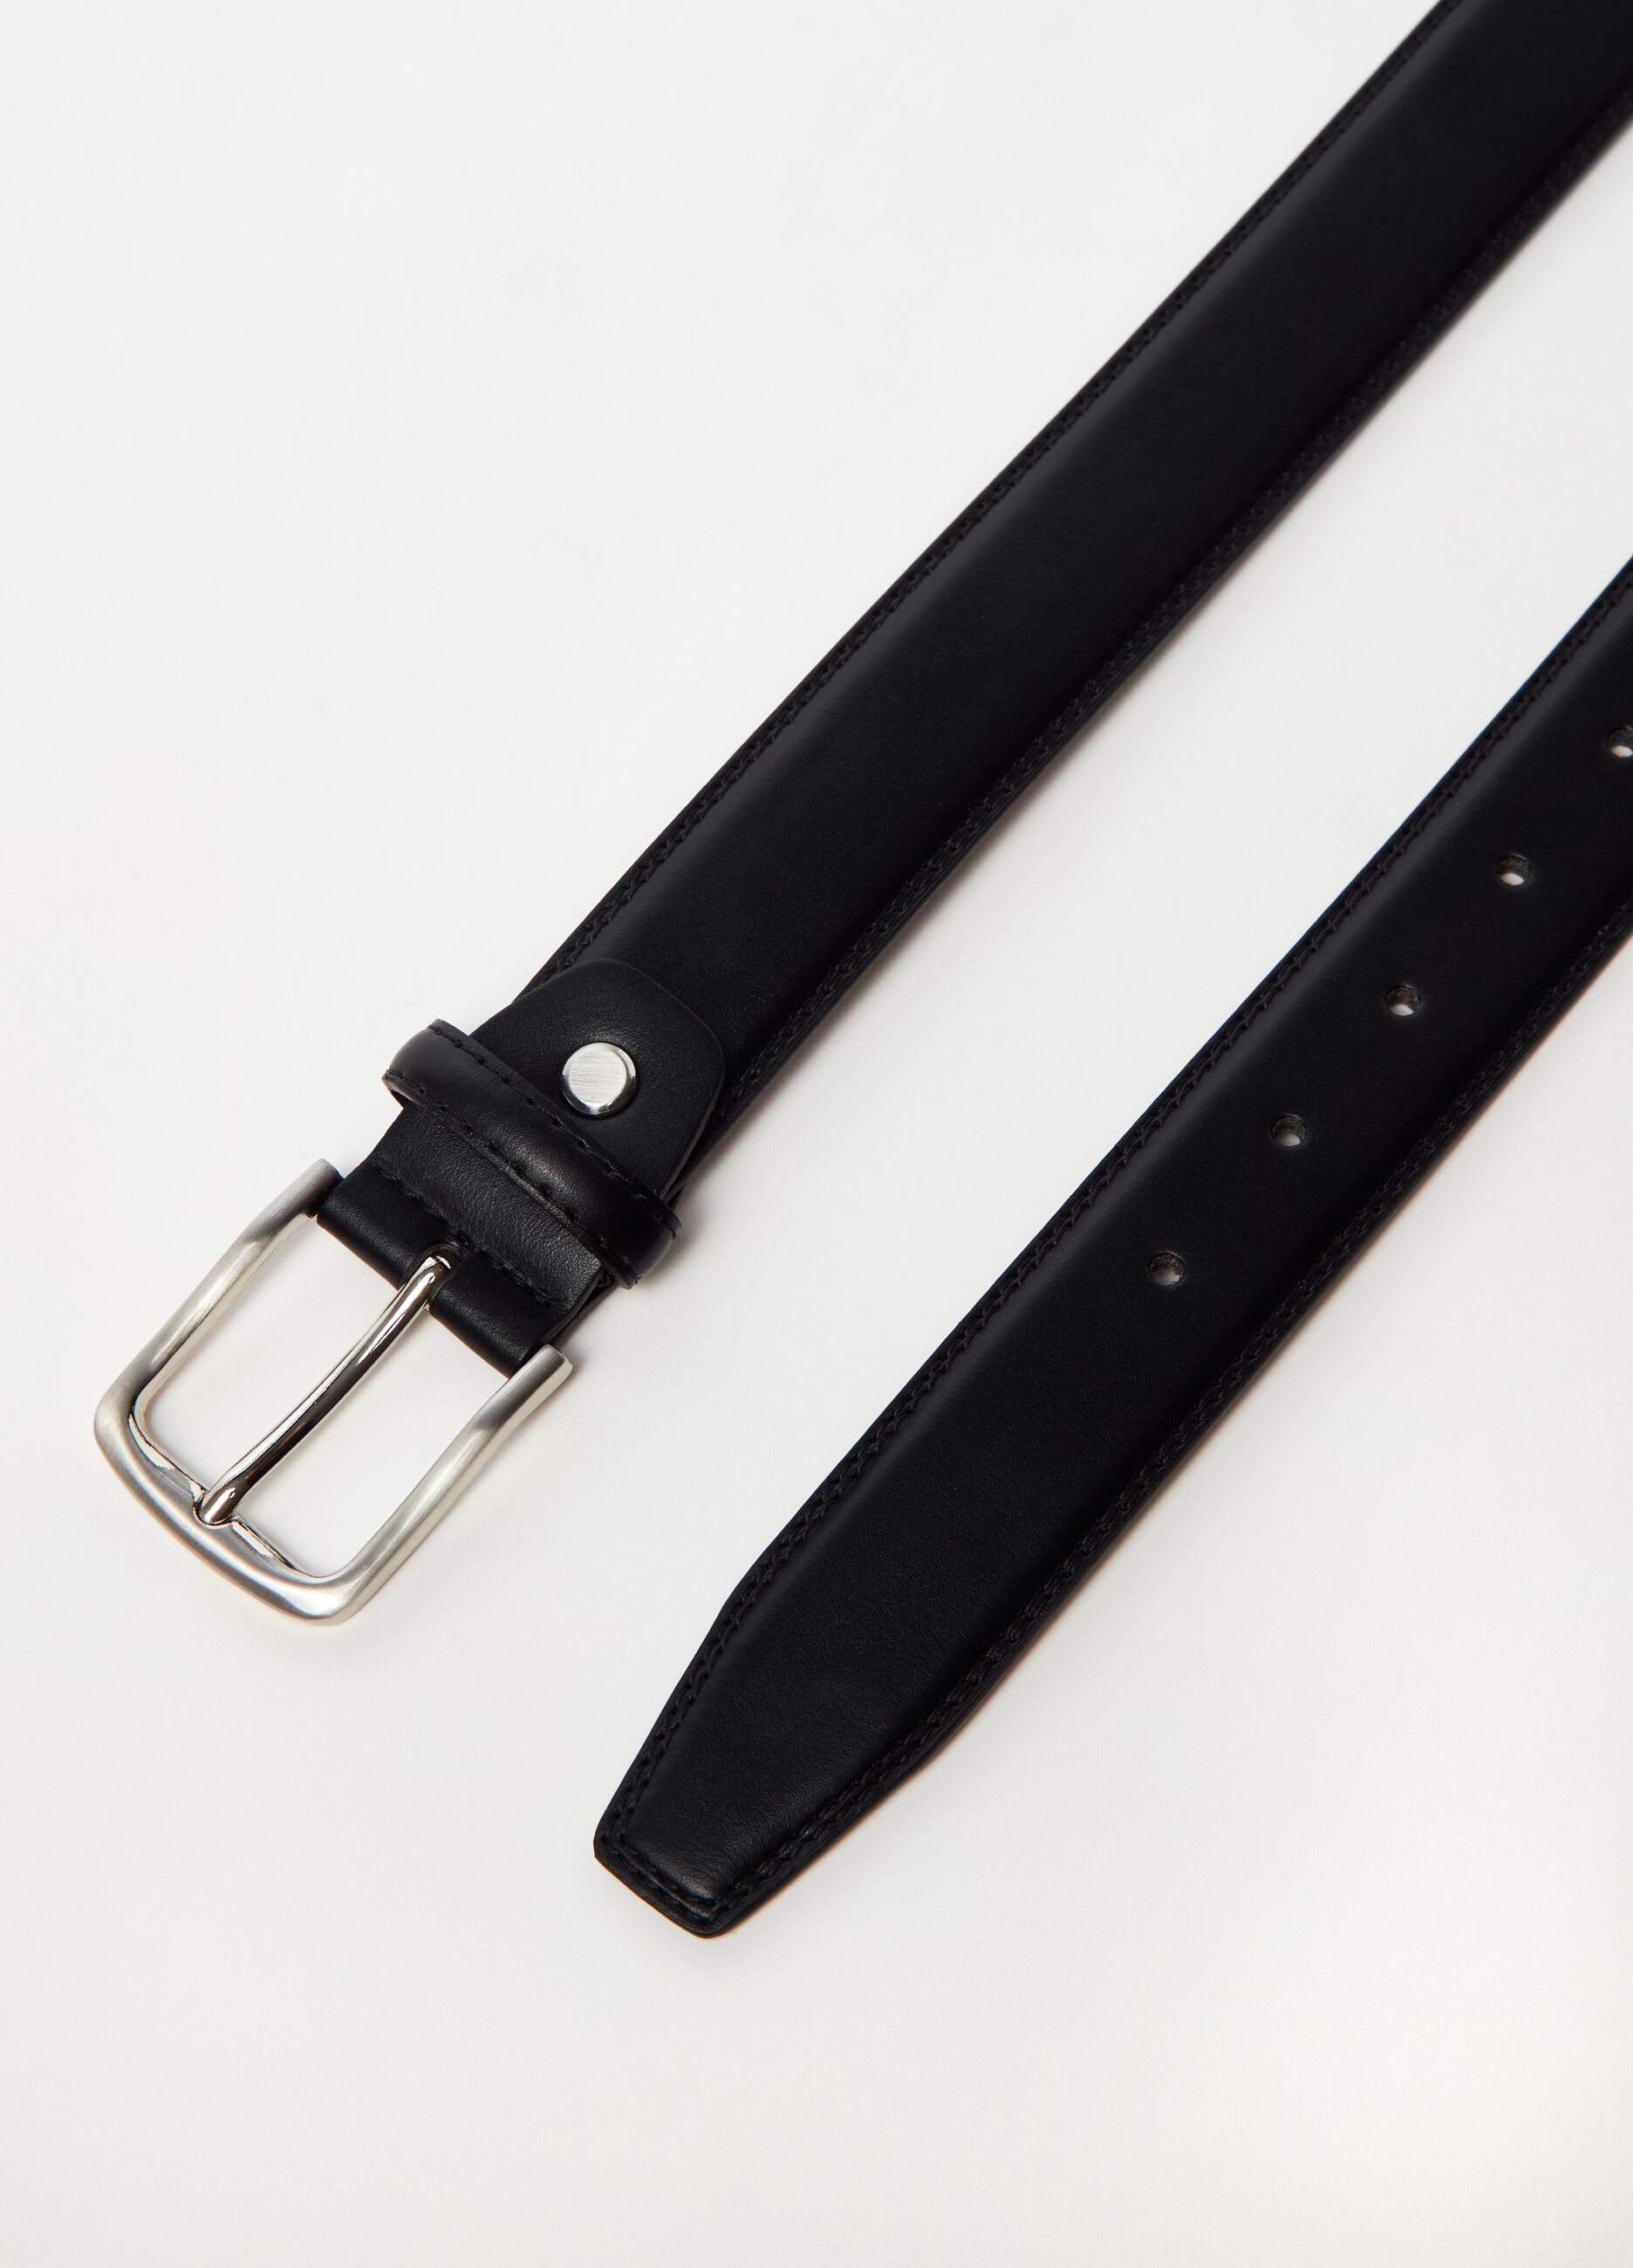 Skinny belt with metal buckle